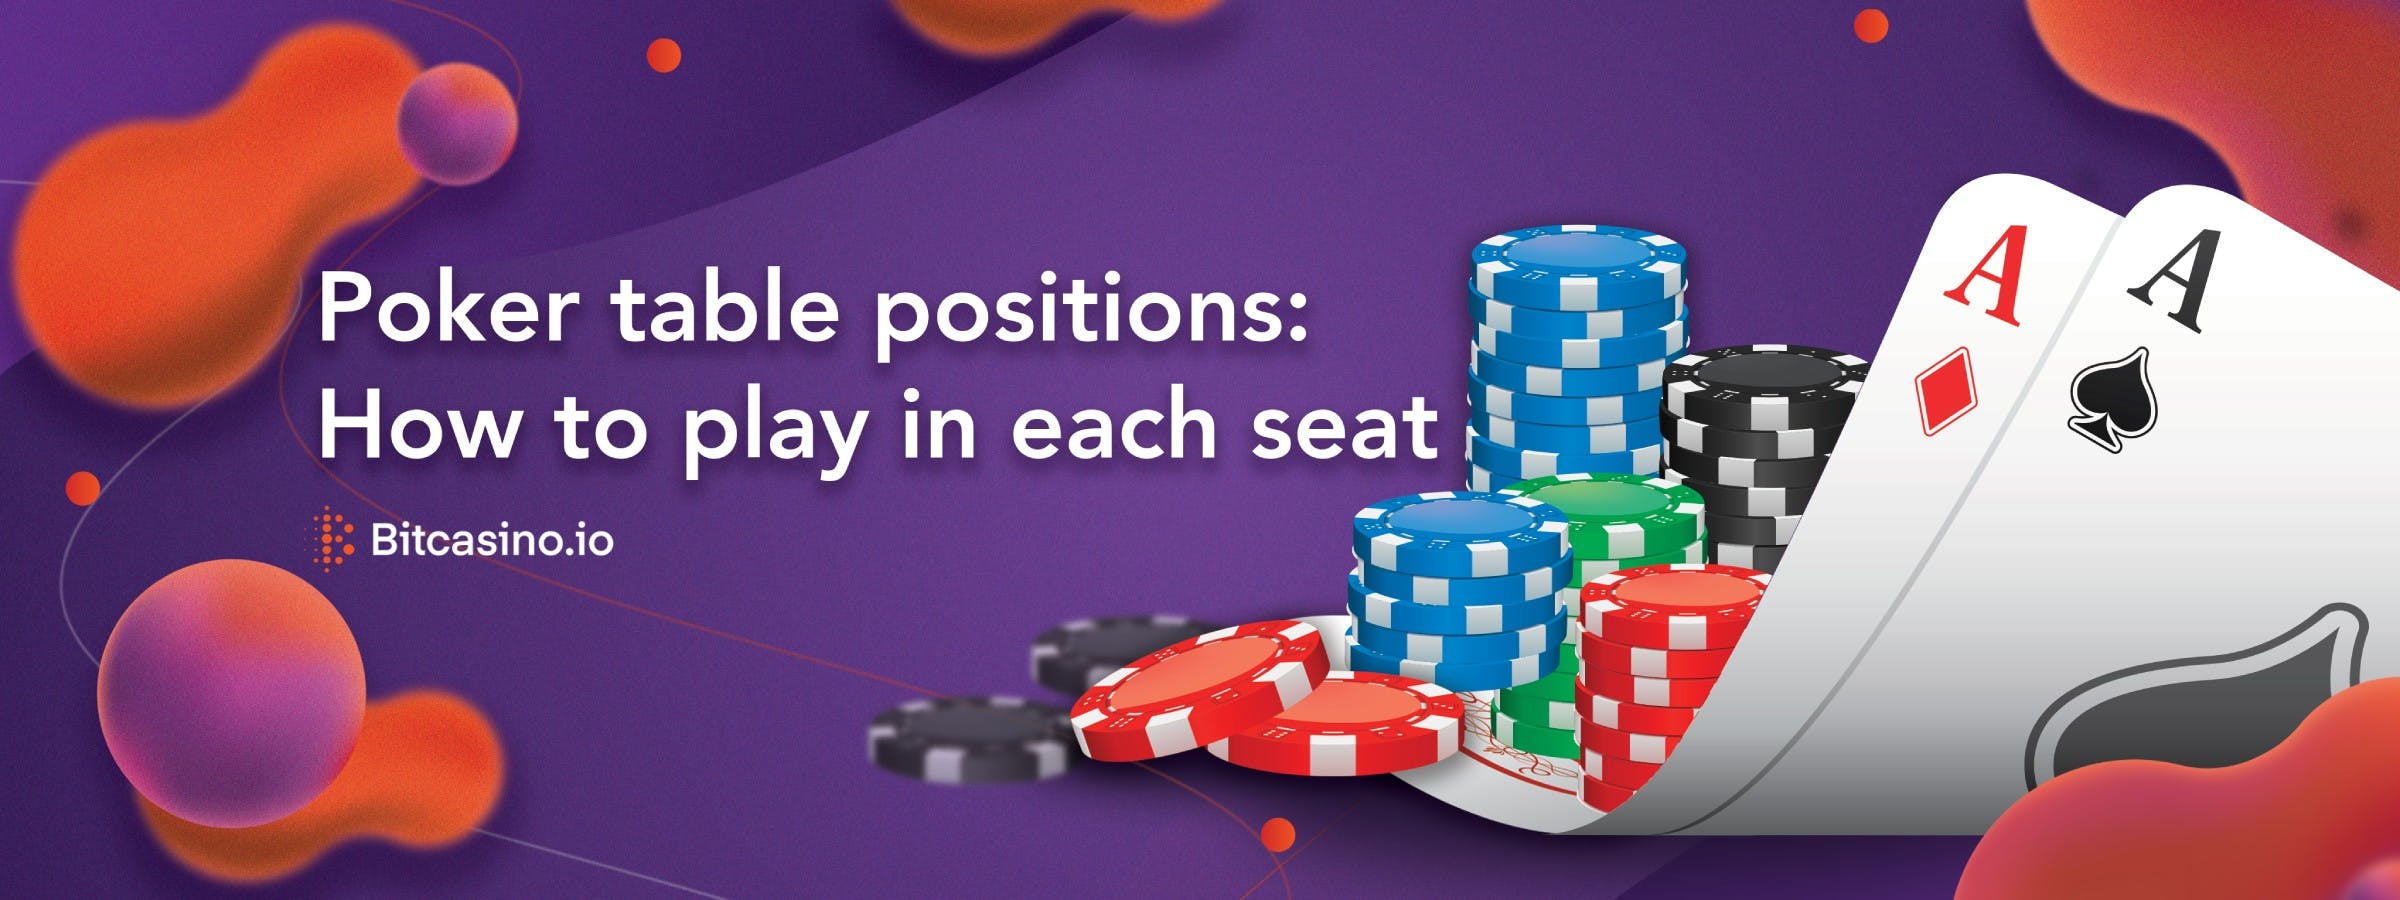 Positionen am Pokertisch: Wie man auf den einzelnen Plätzen spielt